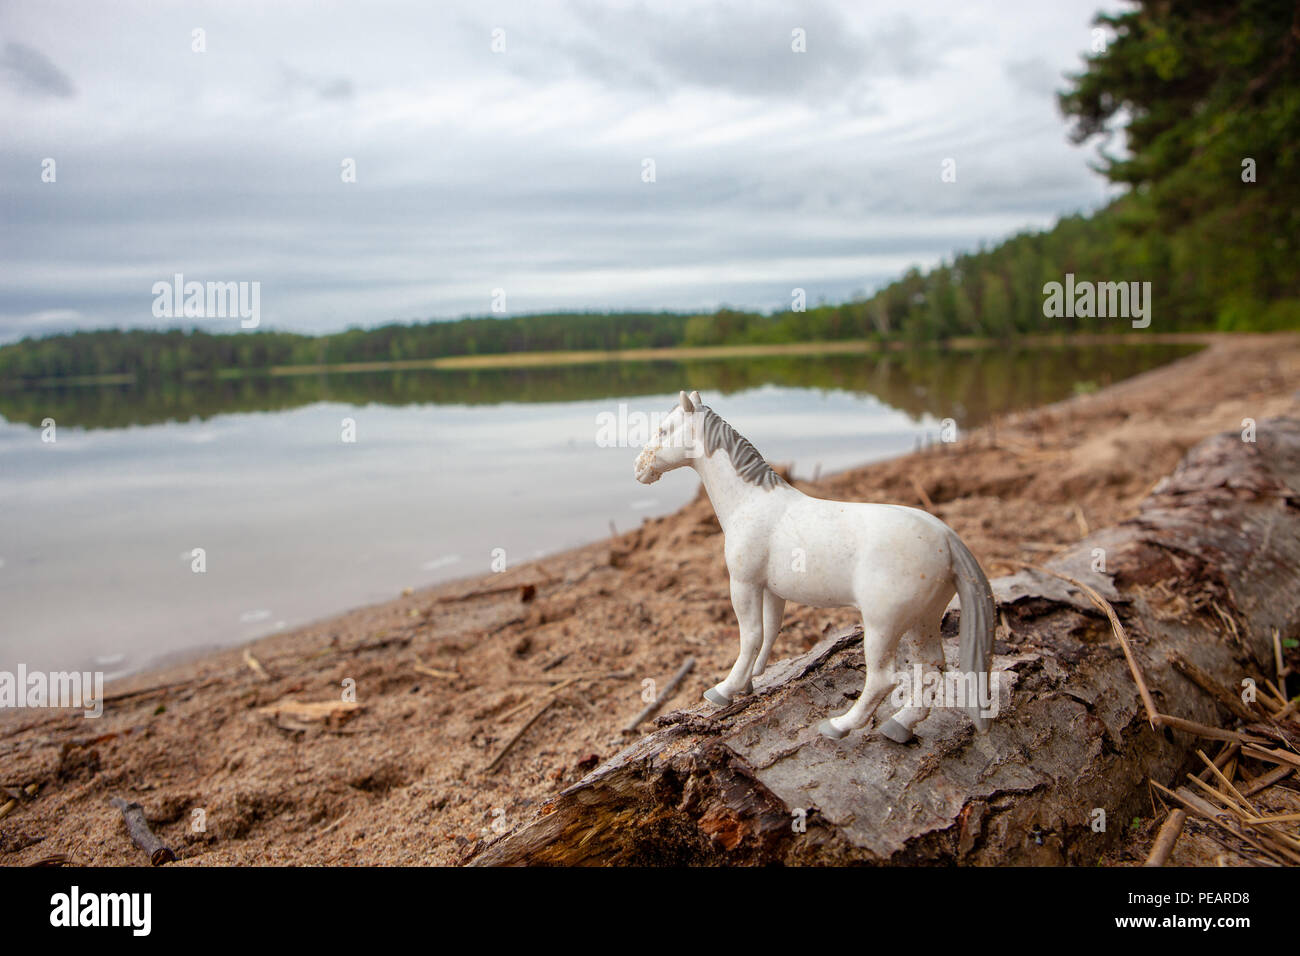 Playa de arena en un lago en un bosque con el cielo nublado y árboles, agua tranquila, tranquila y de fondo caballo blanco Foto de stock